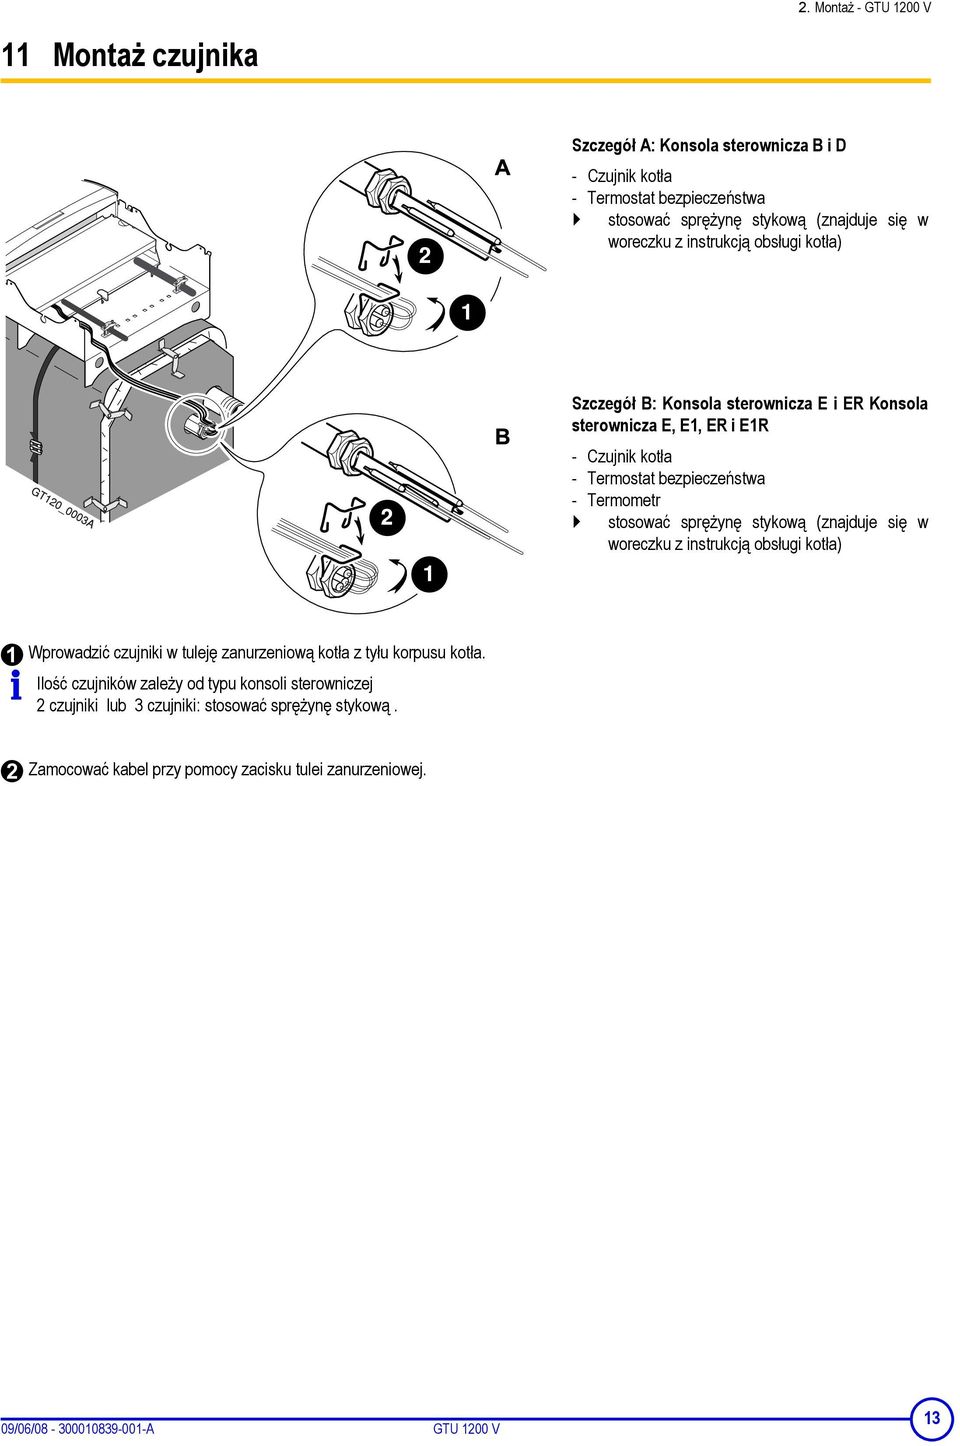 stykową (znajduje się w woreczku z instrukcją obsługi kotła) Wprowadzić czujniki w tuleję zanurzeniową kotła z tyłu korpusu kotła.